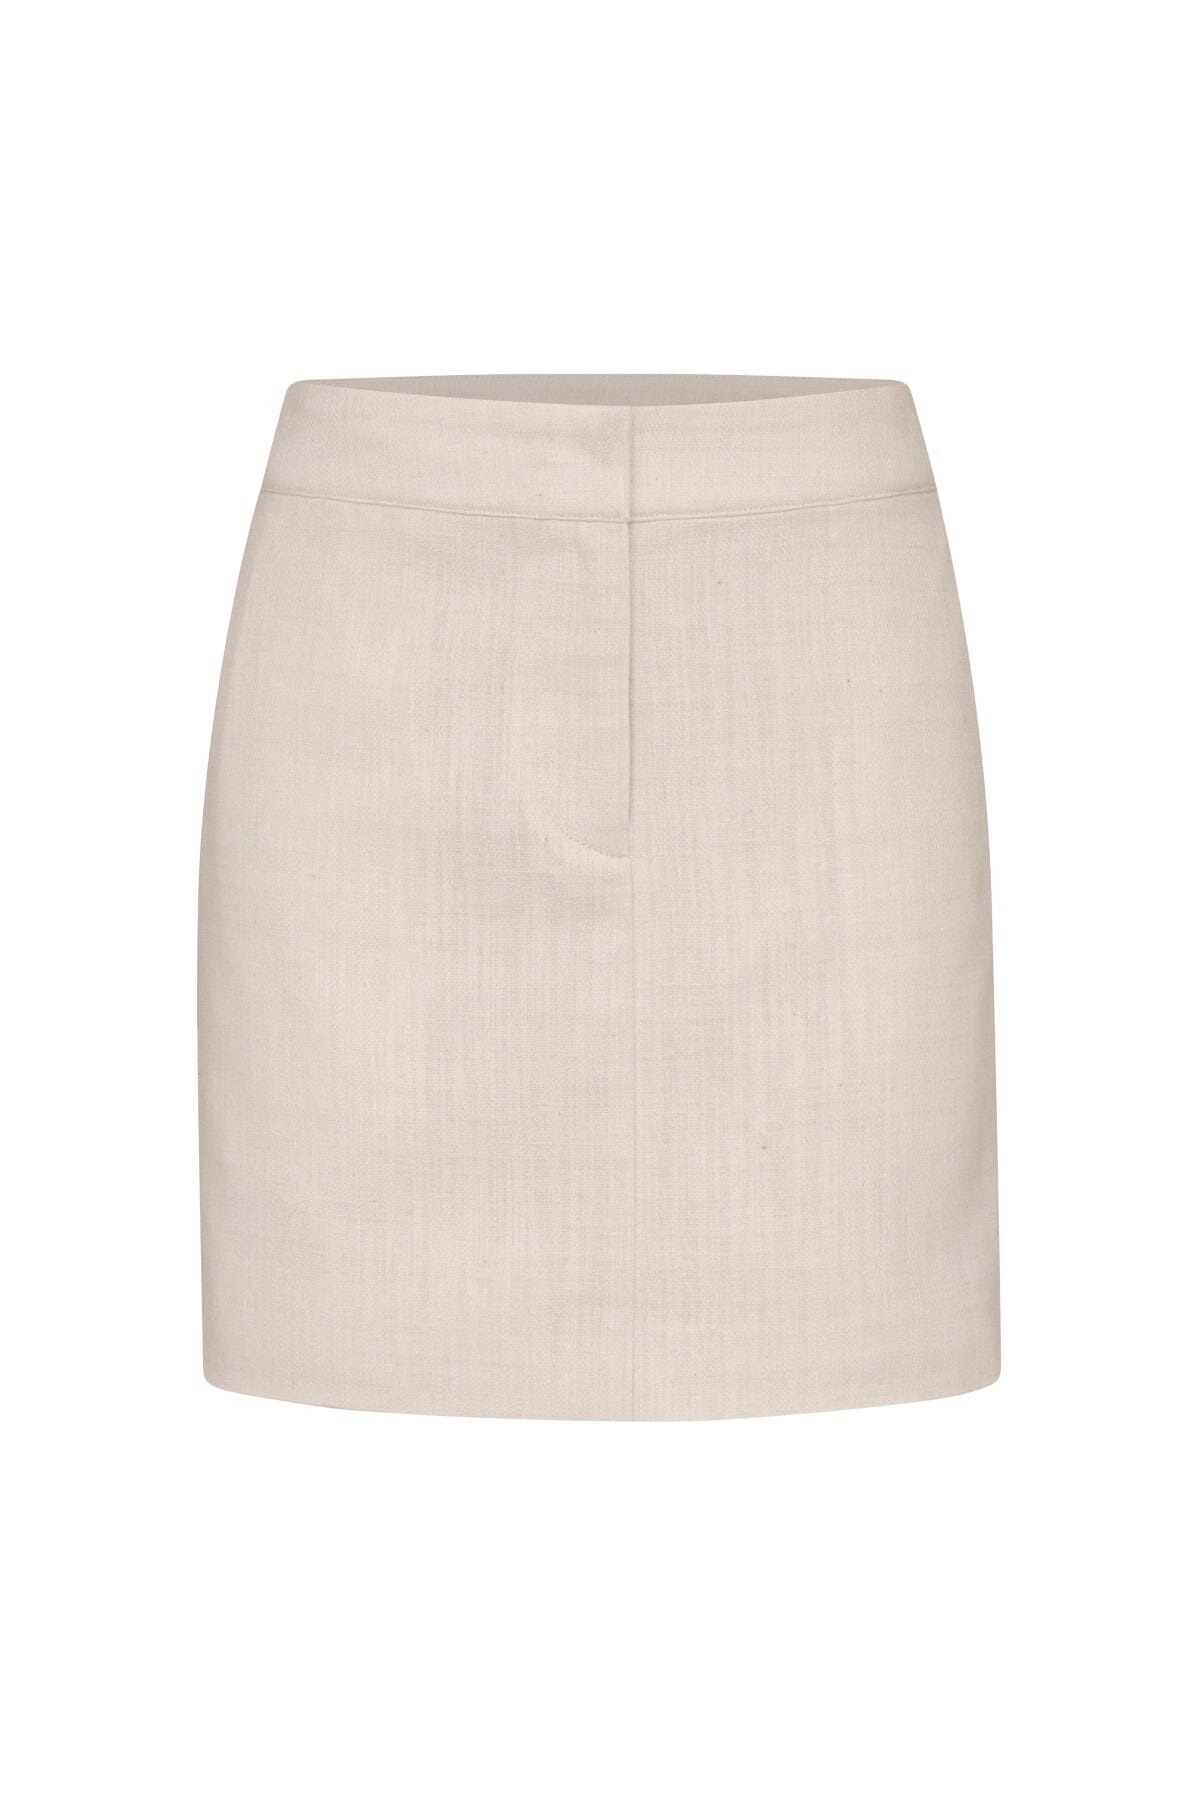 Textured Cotton Linen Mini Skirt Avec Les Filles flattering designer bottoms